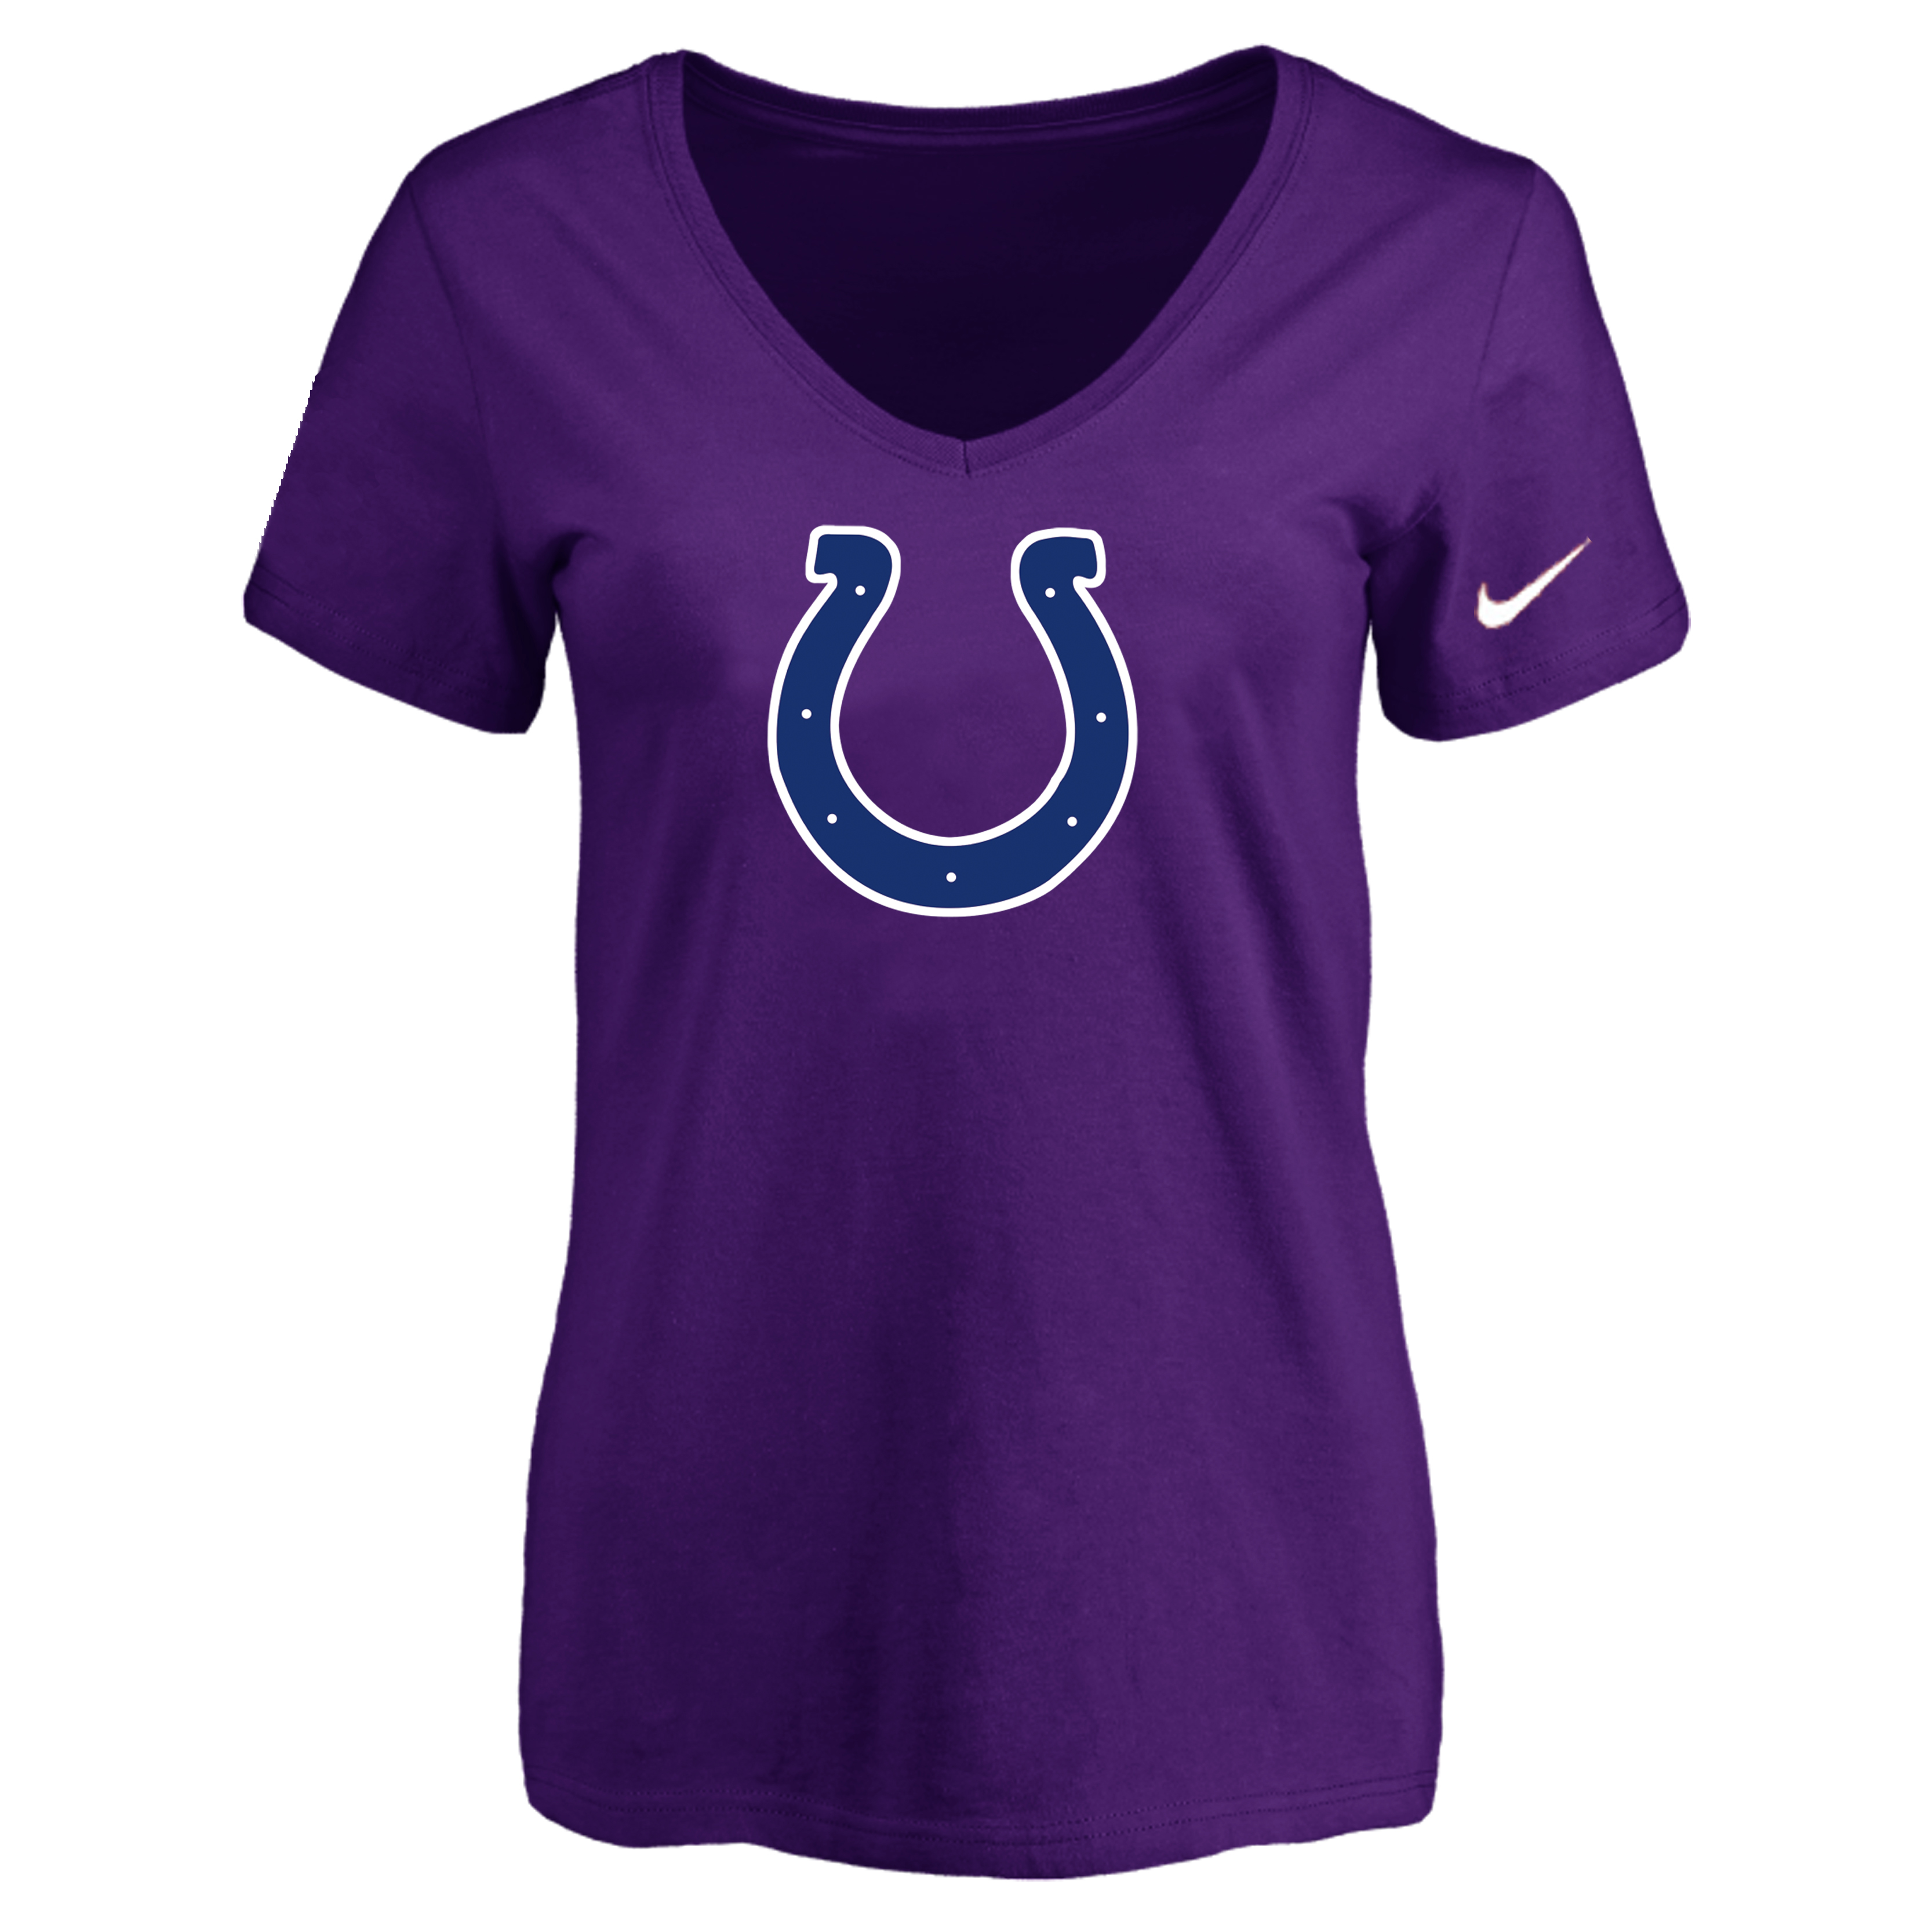 Indiannapolis Colts Purple Women's Logo V neck T-Shirt